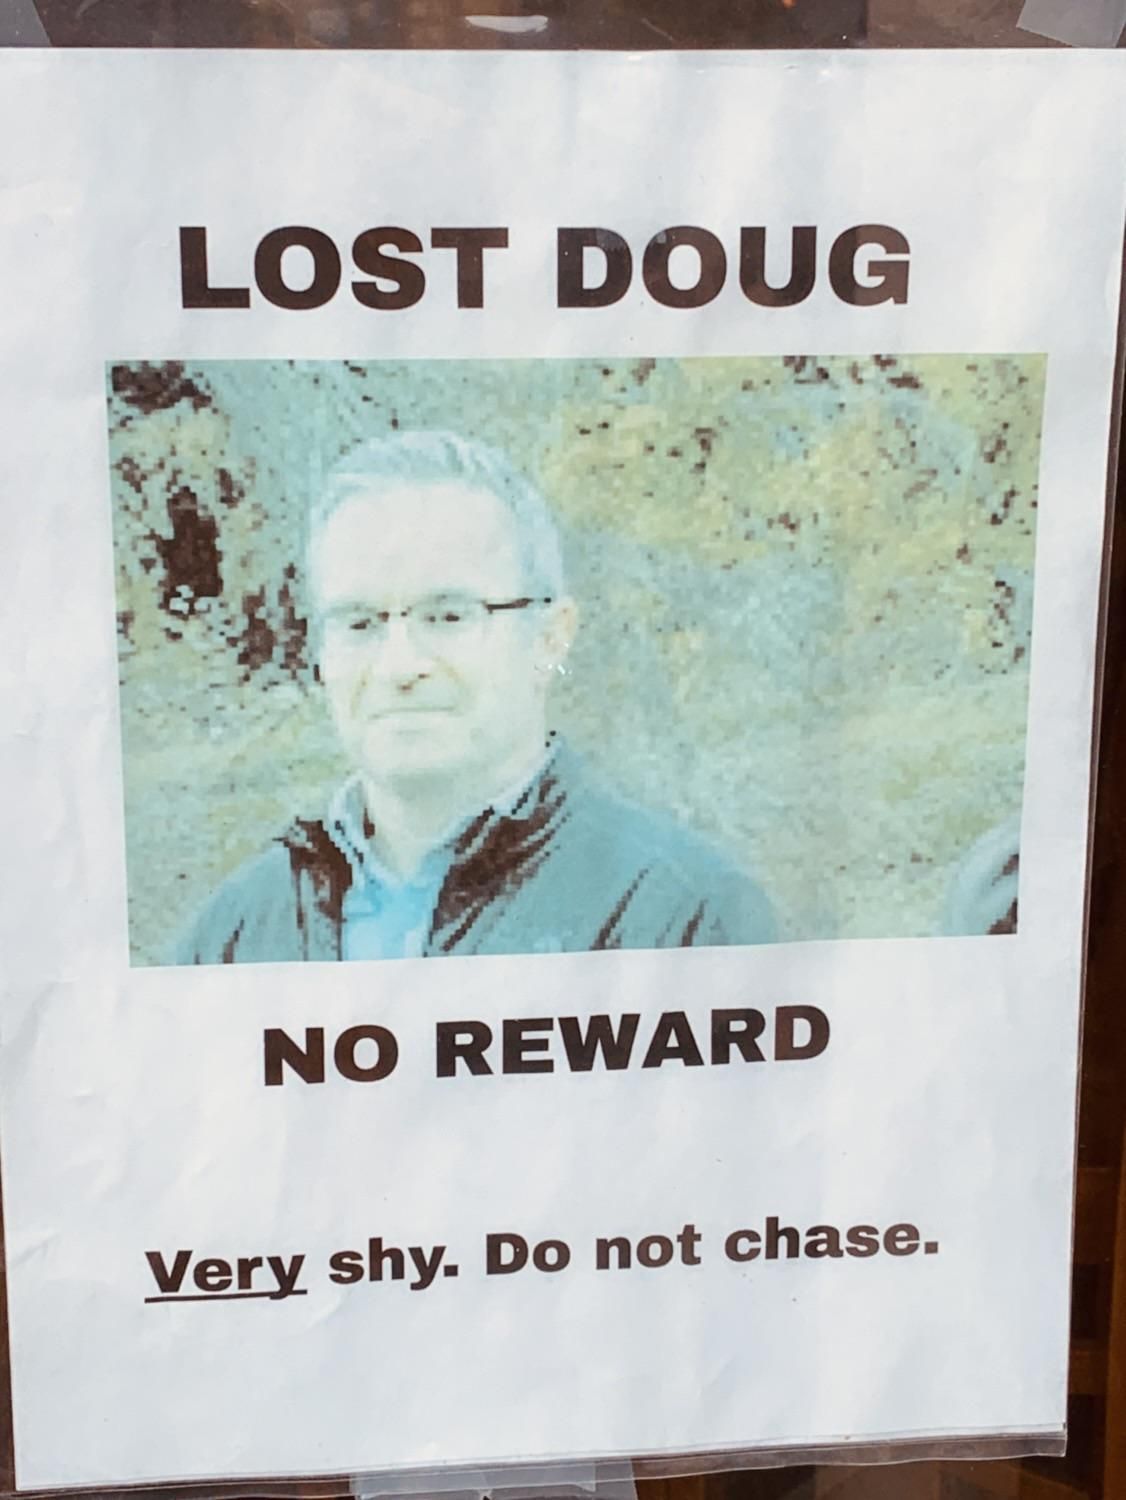 Lost Doug please locate ASAP